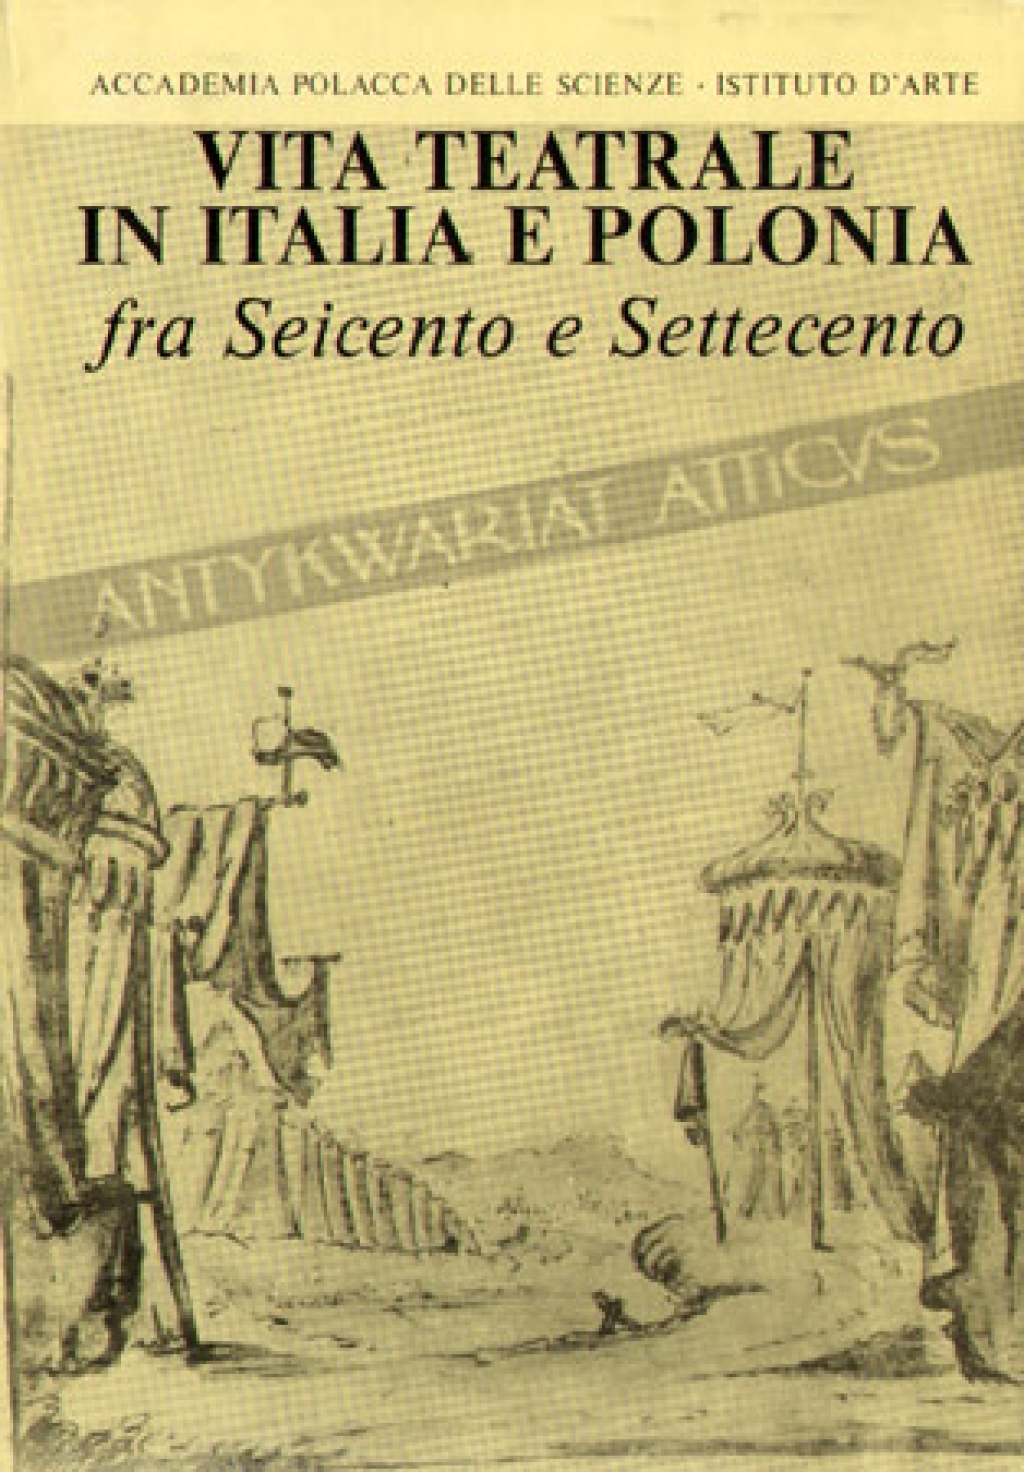 Vita teatrale in Italia e Polonia fra seicento e settecento [Życie teatralne we Włoszech i w Polsce w XVI i XVII wieku]